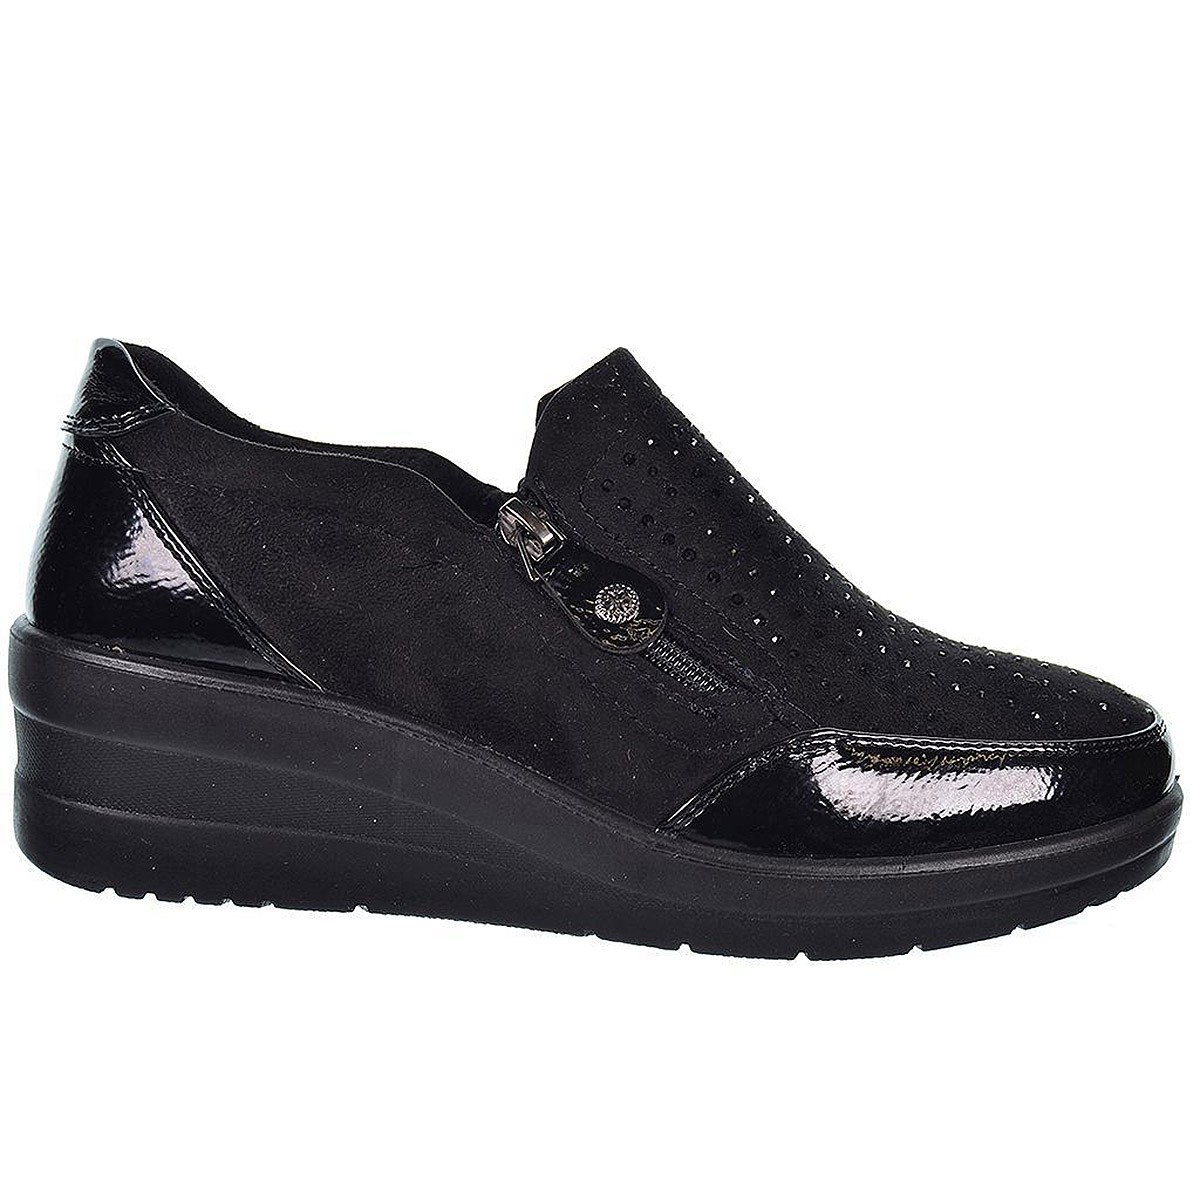 22405 Amarpies Zapato Confort Zapato sintético charol y antelina. Plantilla acolchada confort extraíble. Con cremallera y suela 